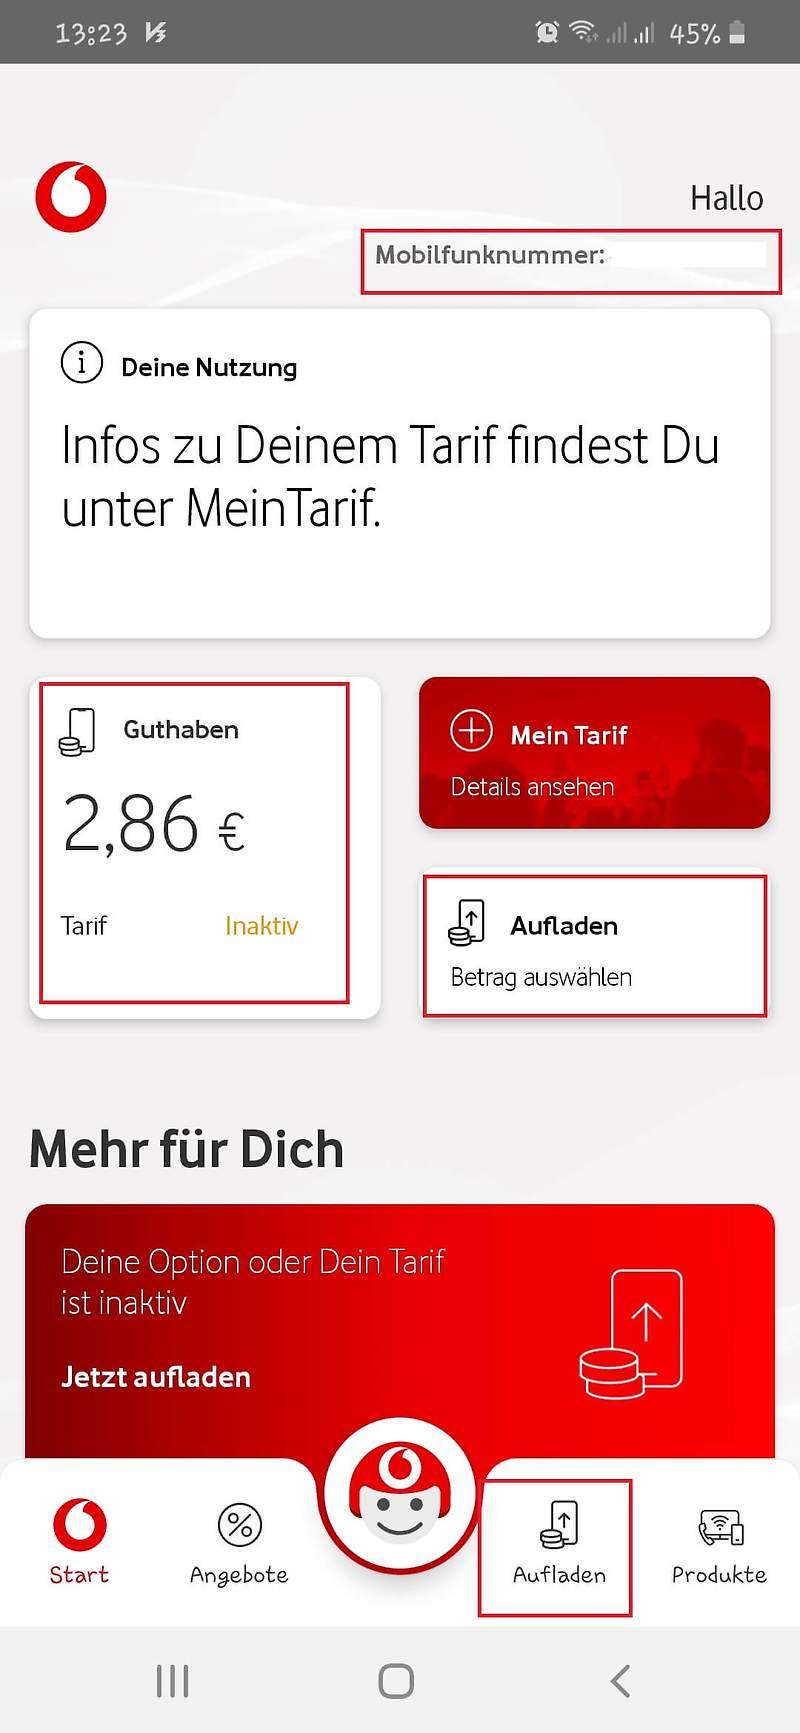 독일 및 해외에서 데이터 충전하는 가장 손쉬운 2가지 방법, 독일 보다폰 충전 (Vodafone)!